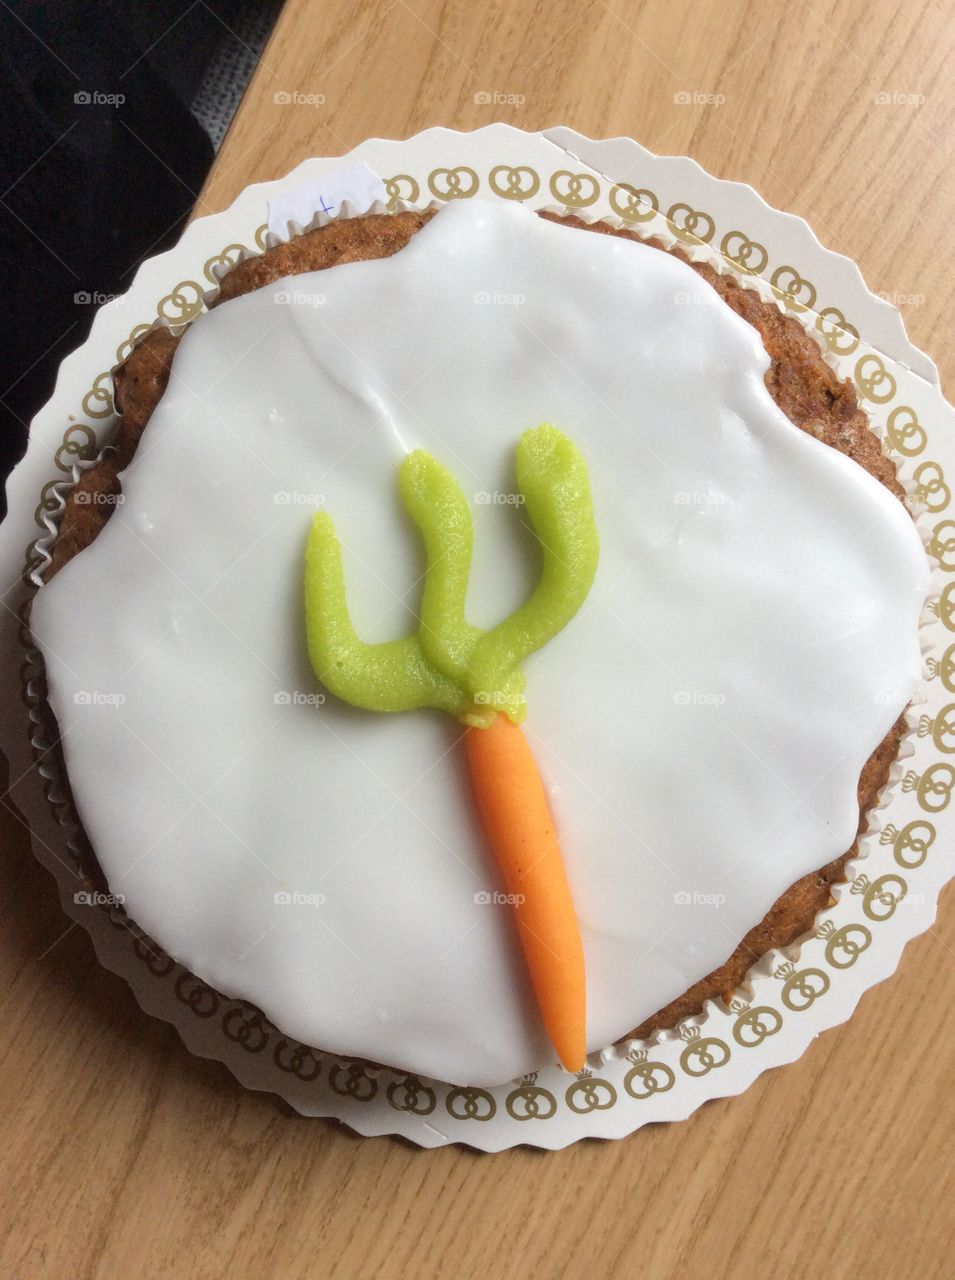 Danish carrot cake